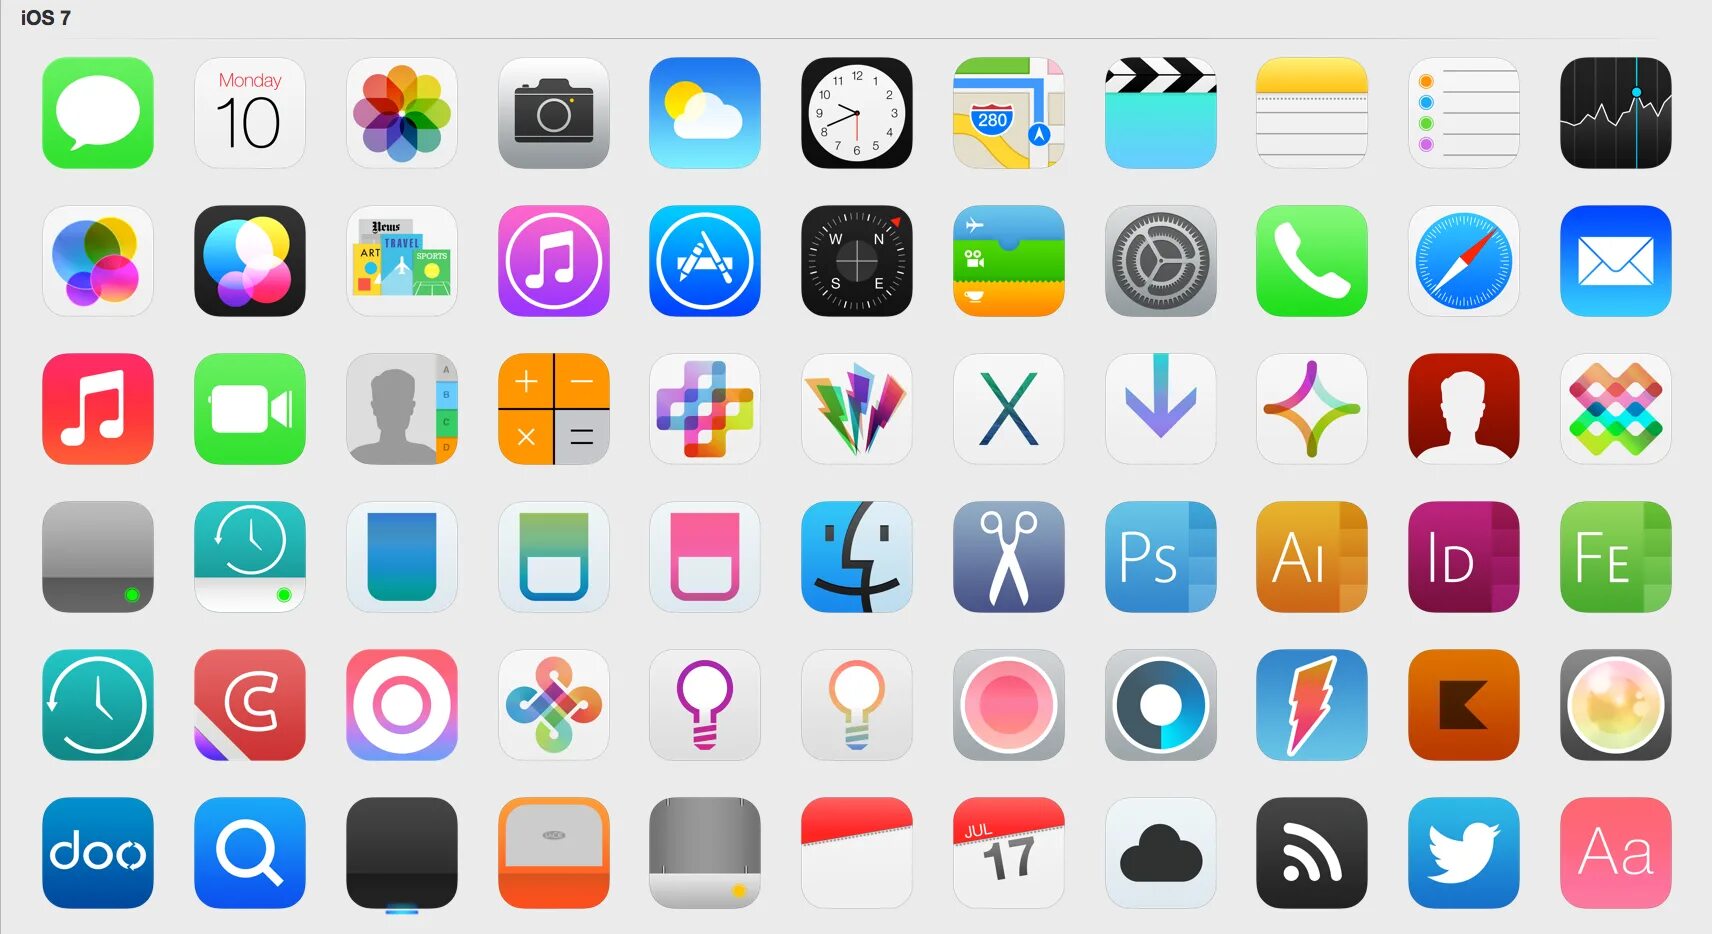 Значки на рабочем экране телефона. Айфон иконка. Иконки для приложений. Иконки приложений Apple. Красивые иконки для приложений.